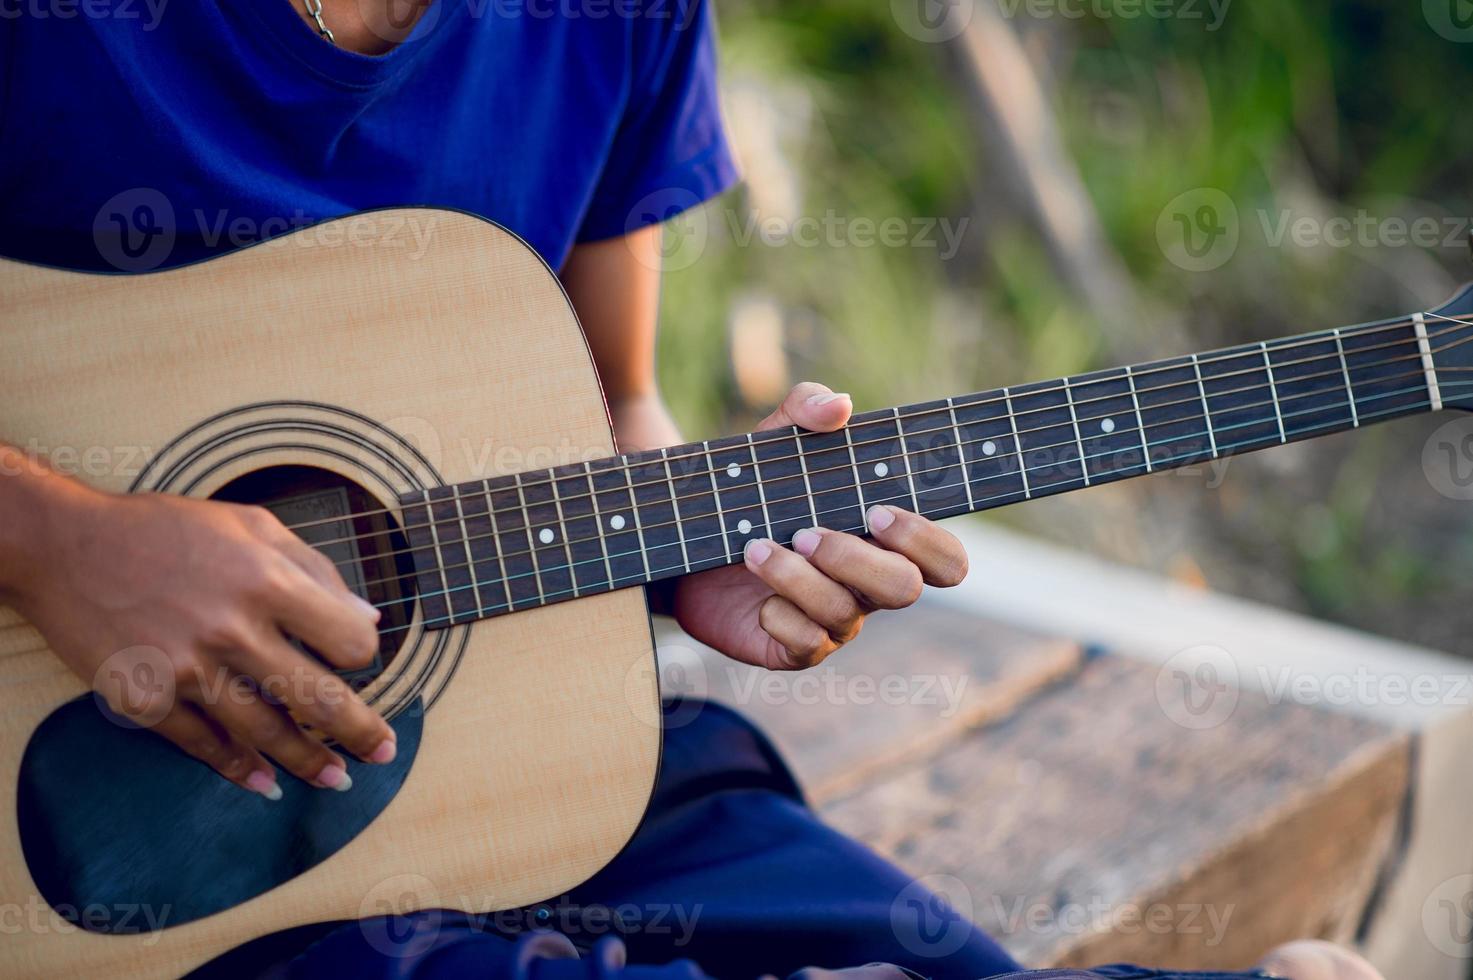 mains et guitares de guitaristes jouant des concepts de guitare, instruments de musique photo